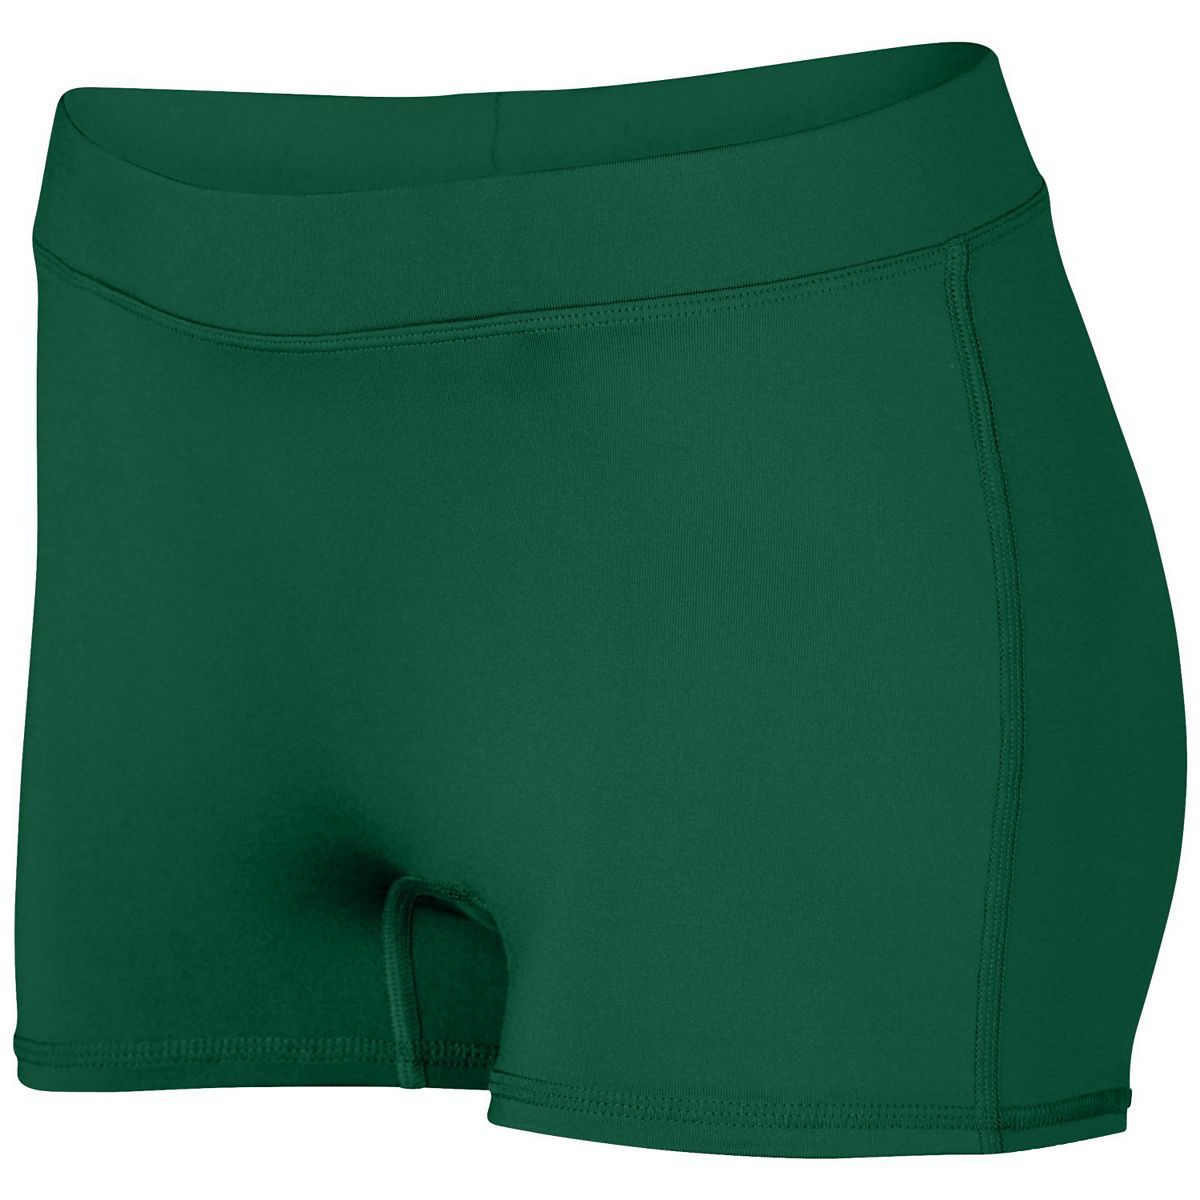 Ladies Dare Shorts - 1232